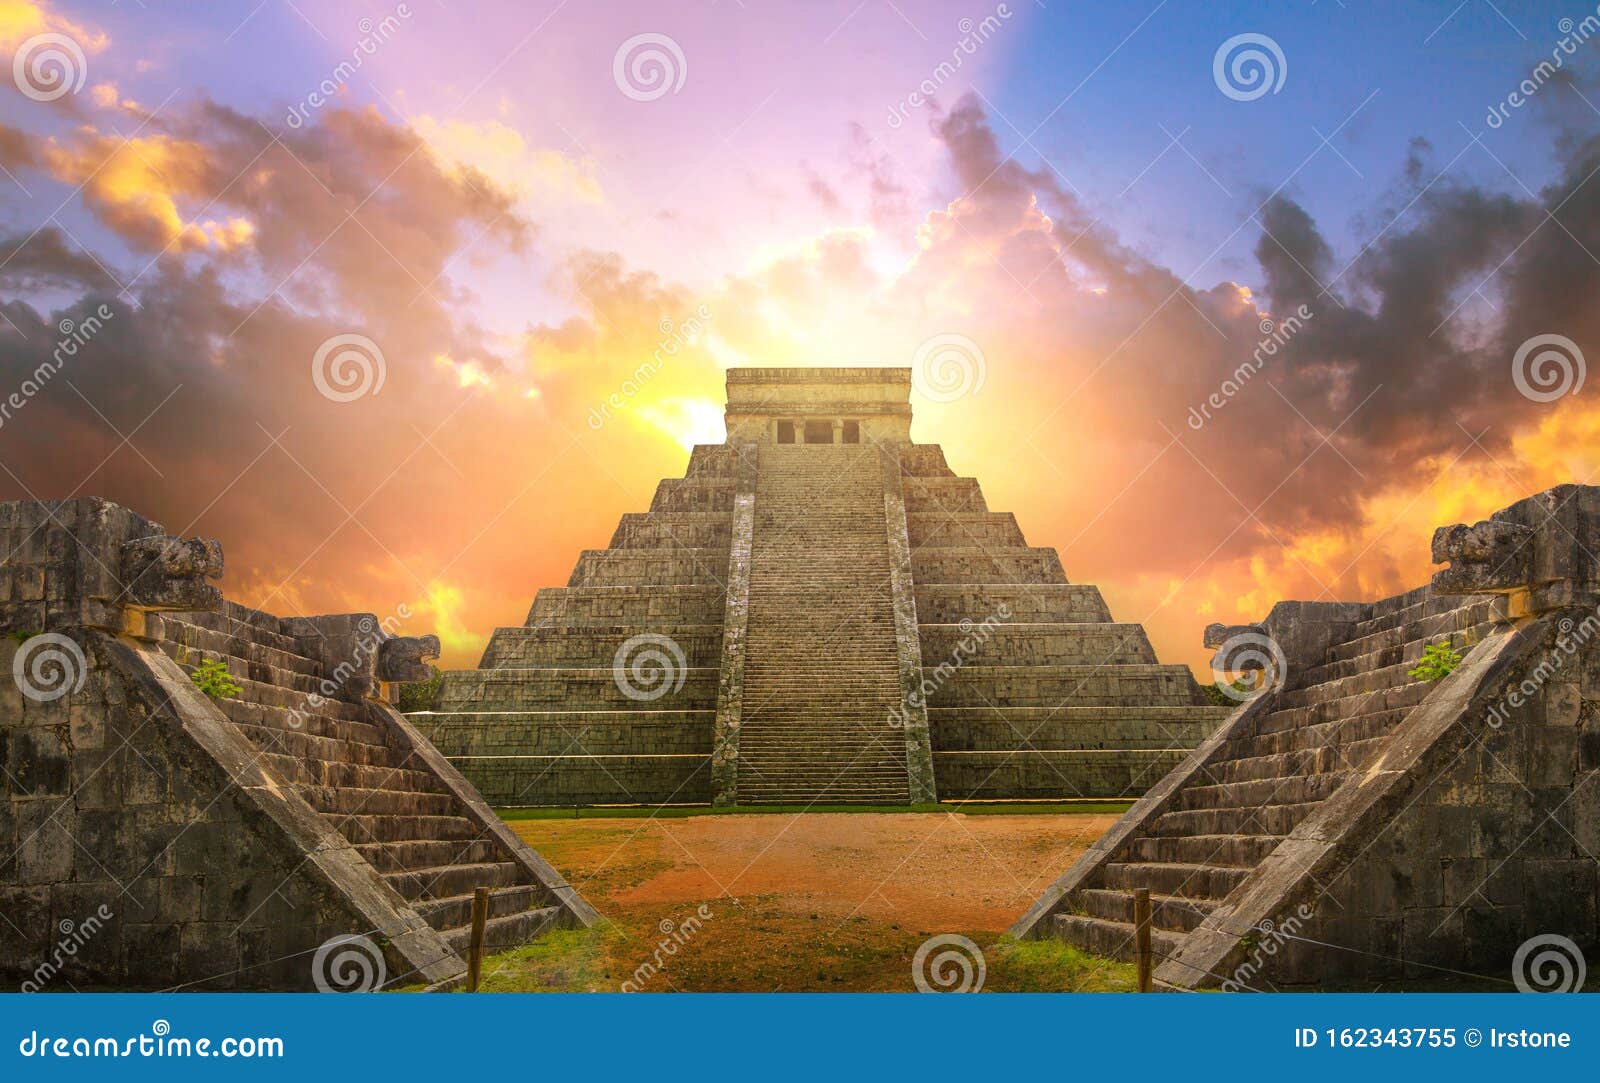 mexico, chichen itzÃÂ¡, yucatÃÂ¡n. mayan pyramid of kukulcan el castillo